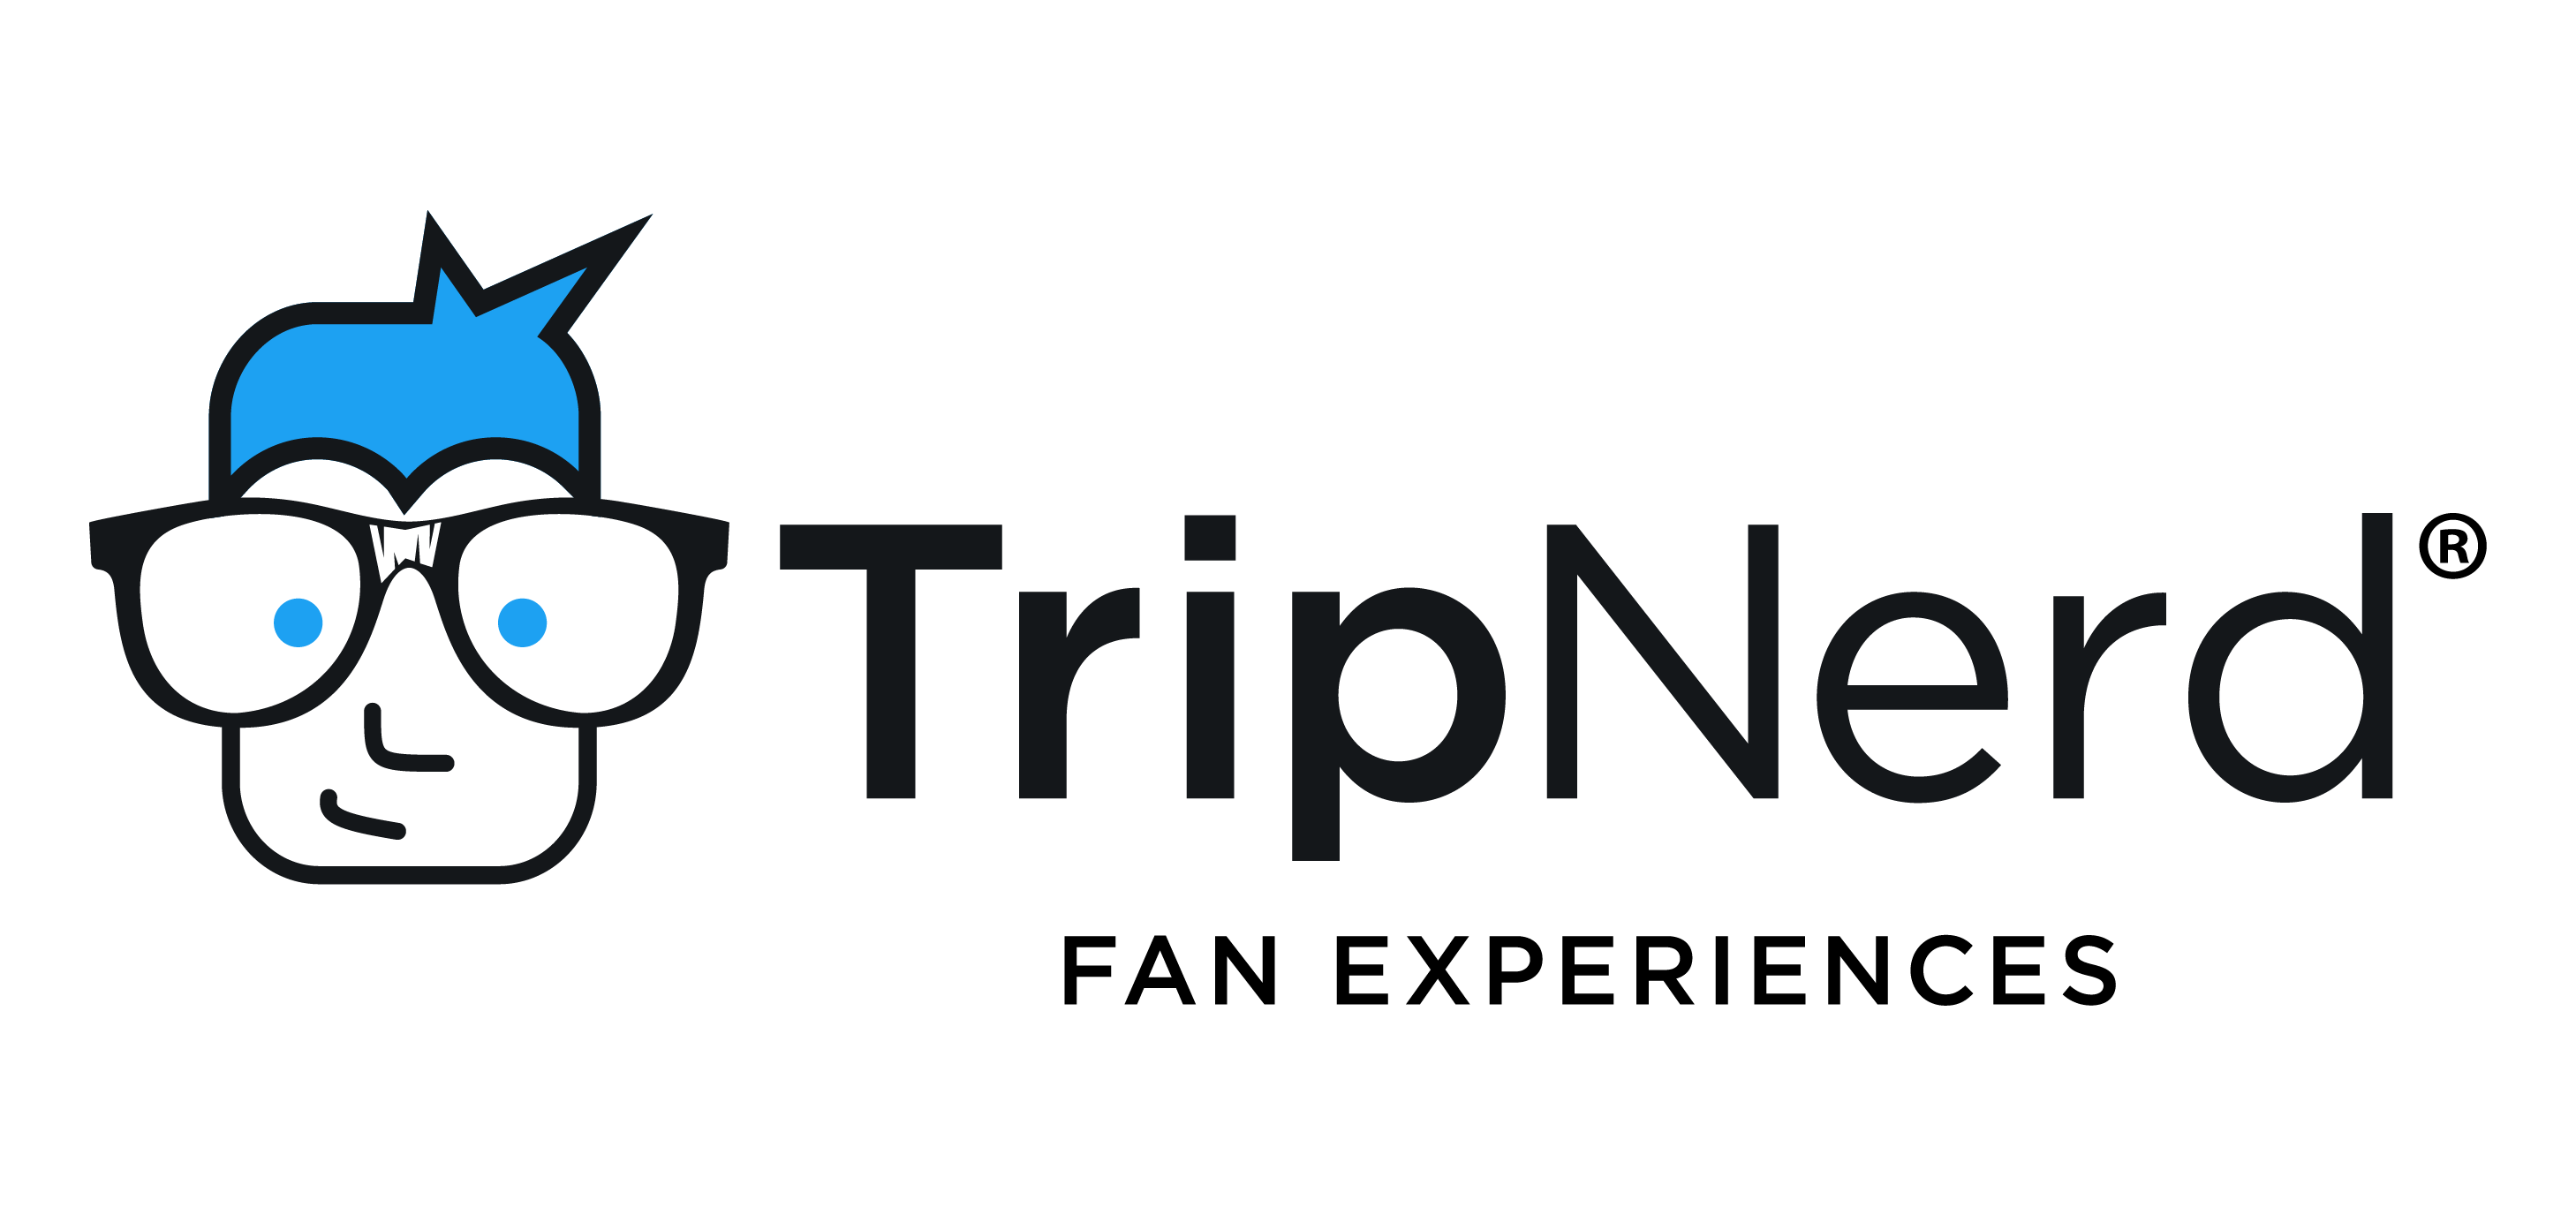 N.E.r.d Logo - TripNerd | Ultimate Fan Experiences